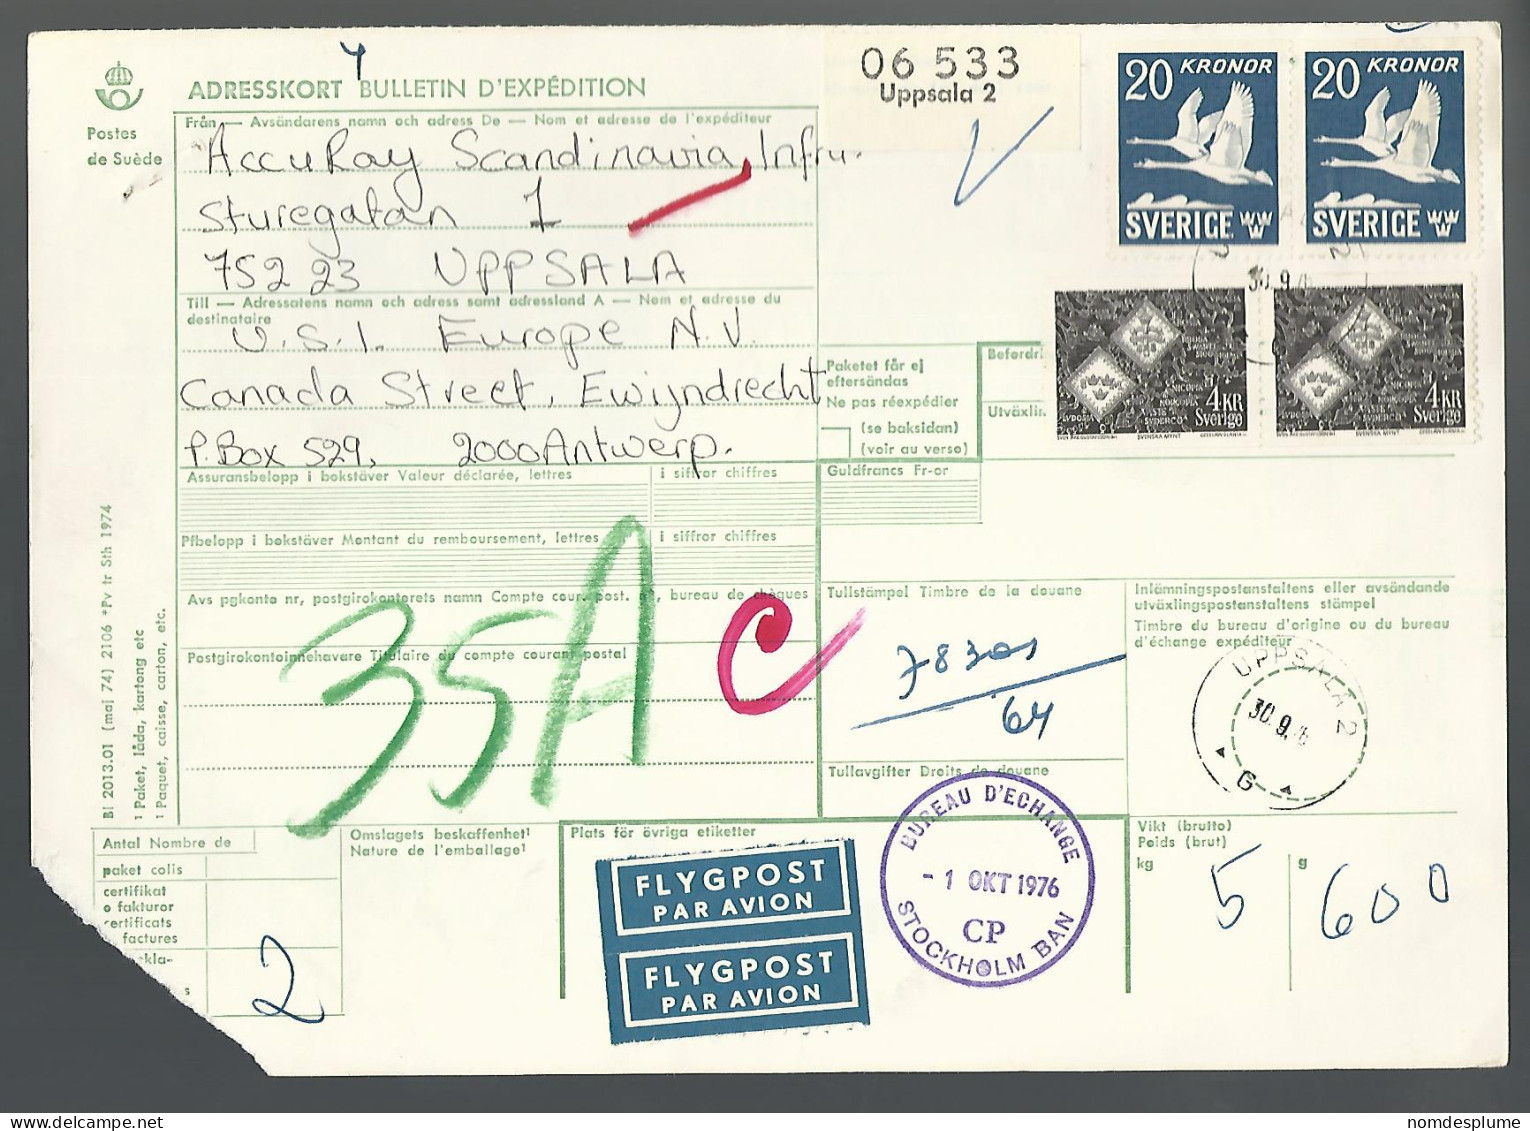 58526) Sweden Adresskort Bulletin D'Expedition 1976 Postmark Cancel Air Mail - Briefe U. Dokumente